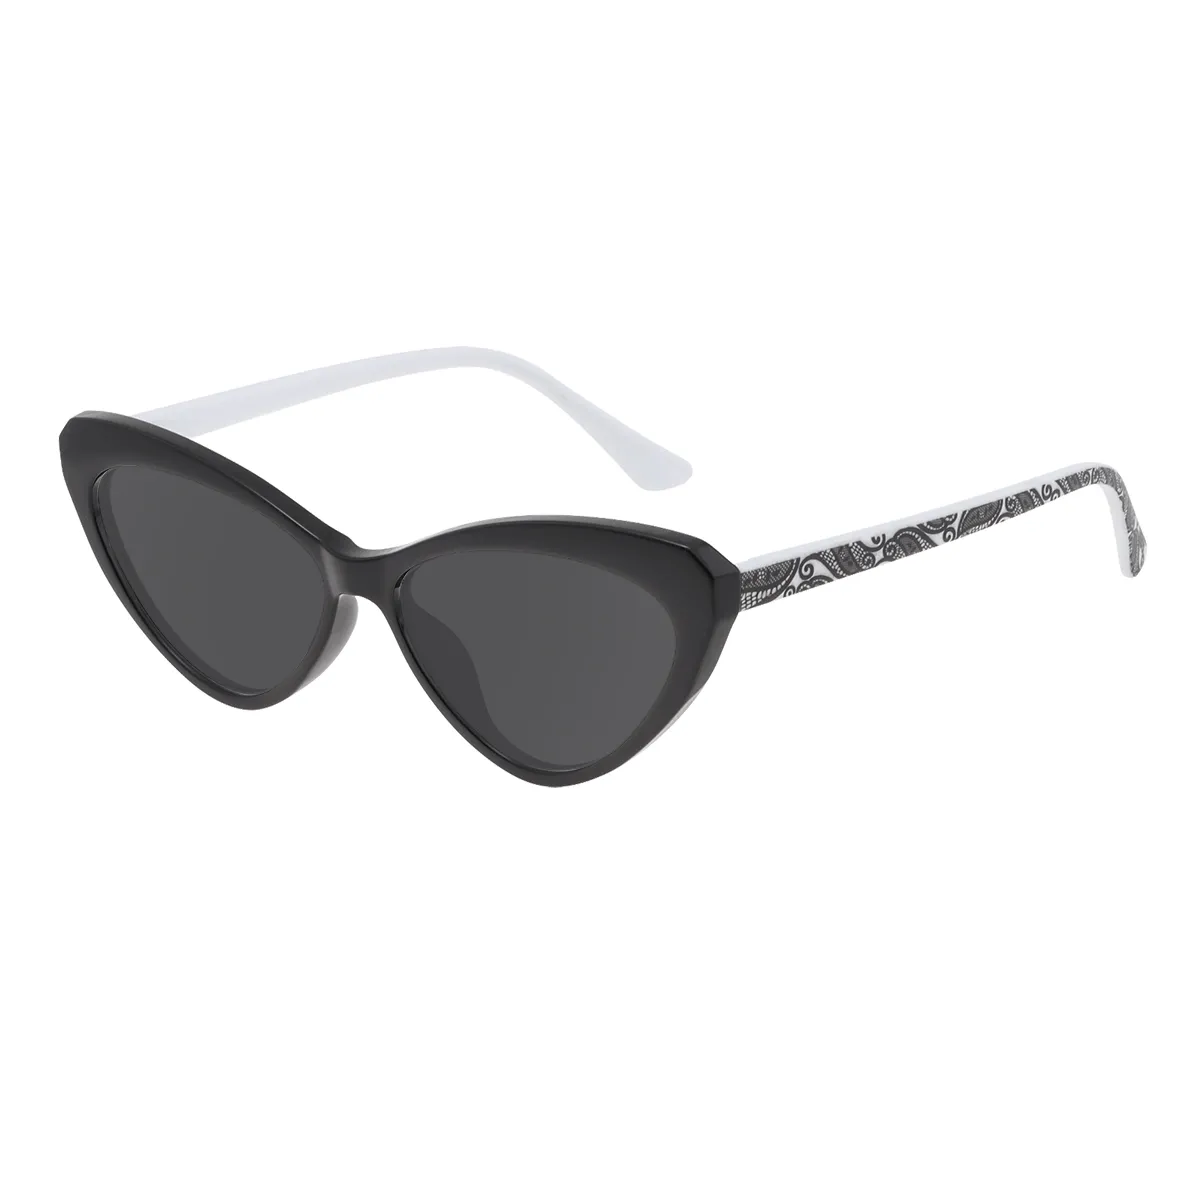 Helga - Cat-eye Black Sunglasses for Women